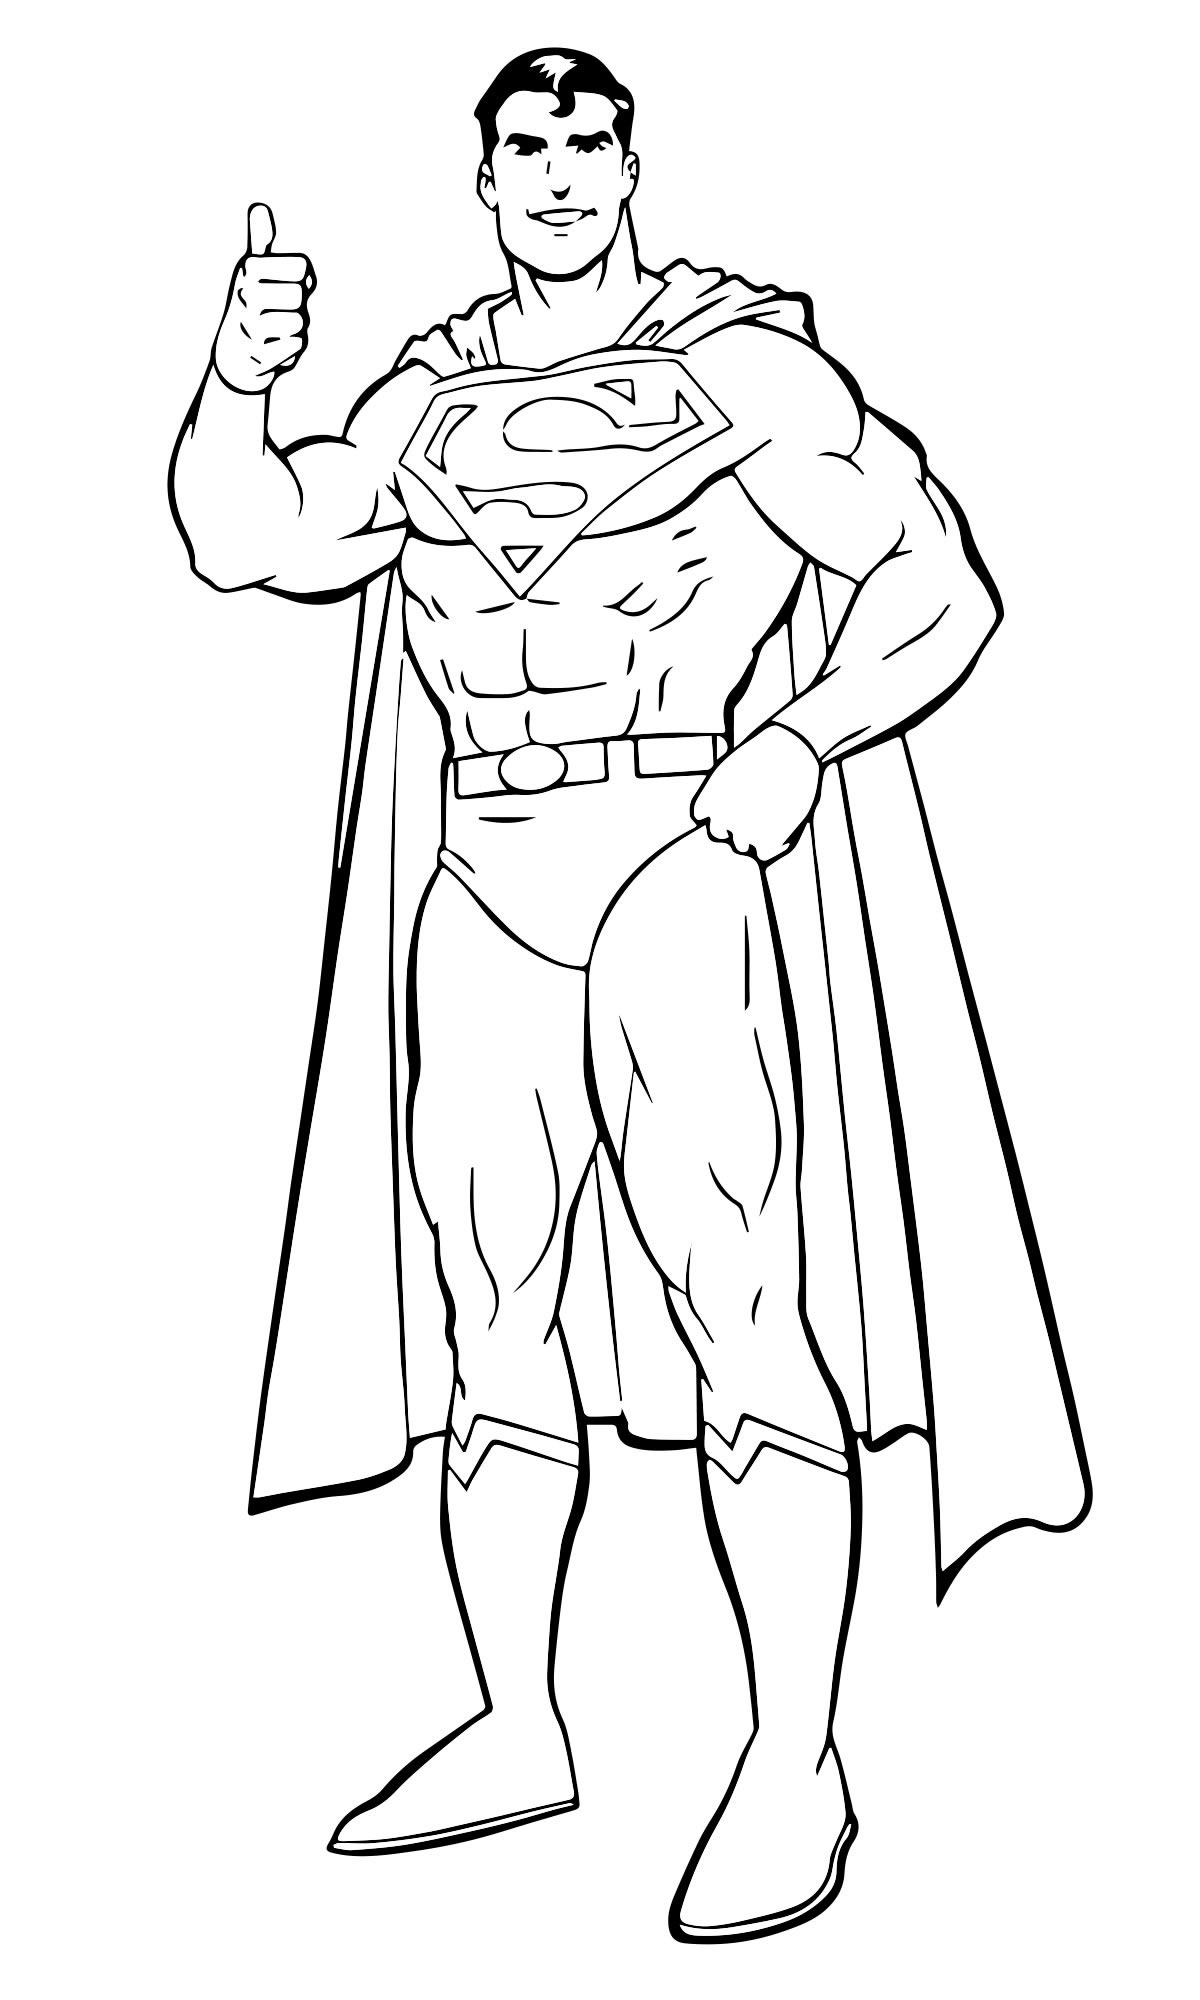 Герой Супермен раскраска